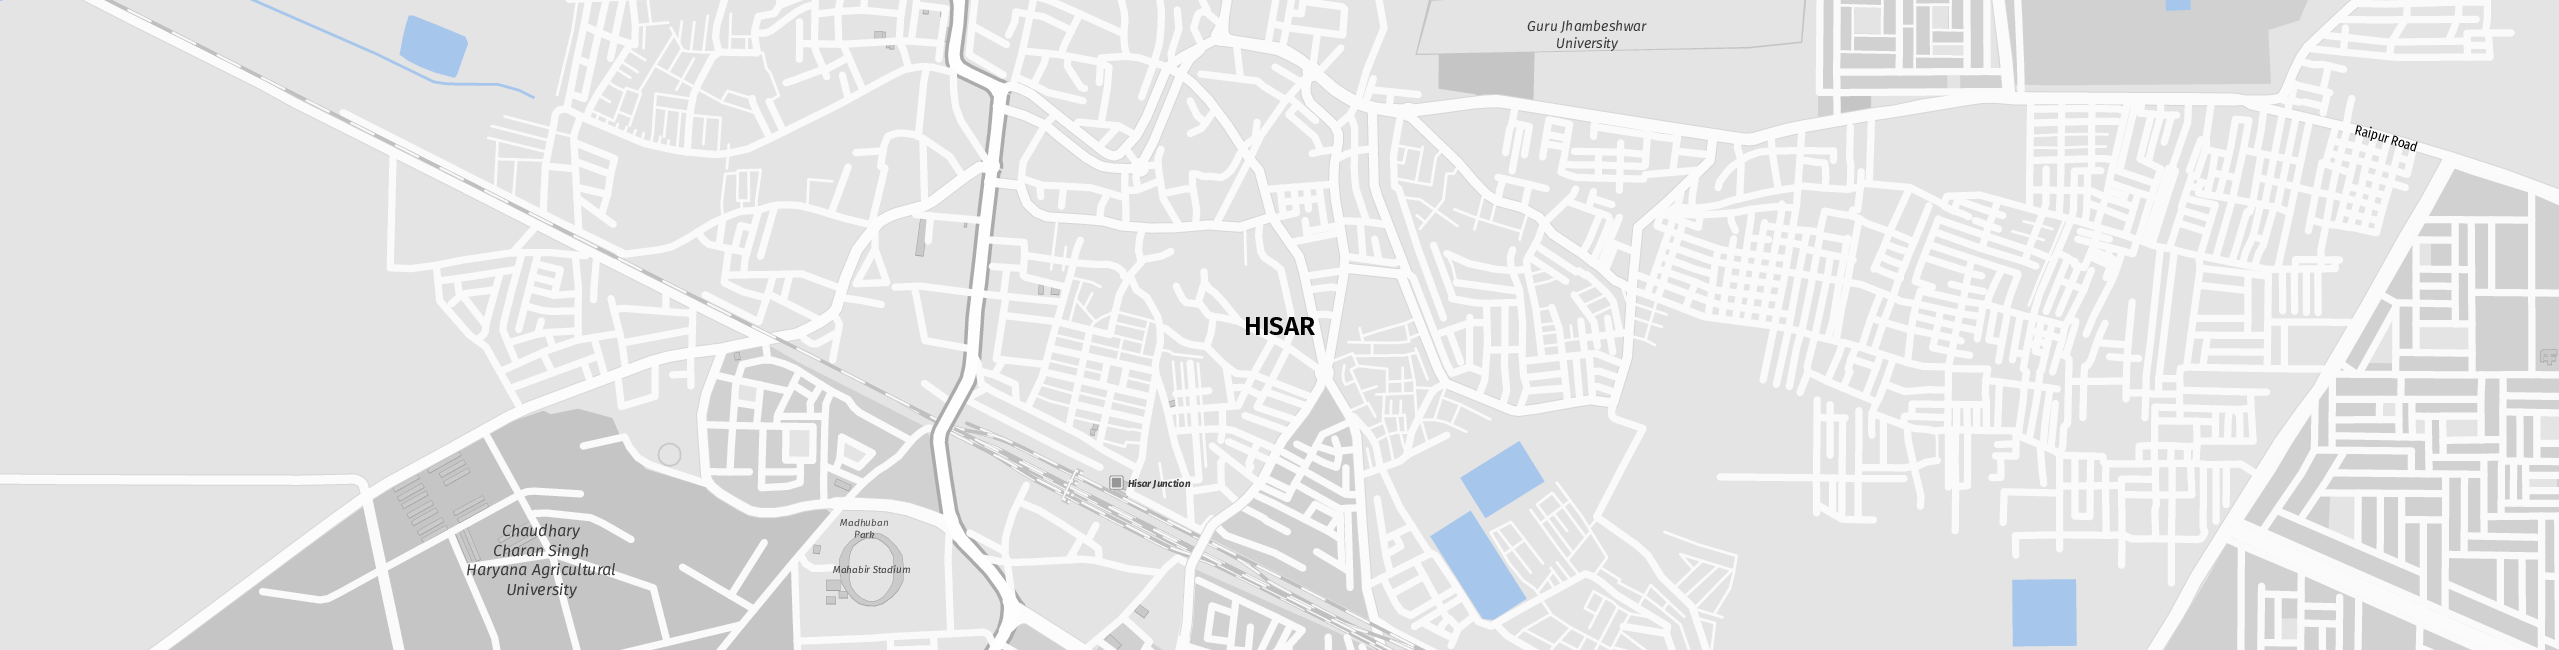 Stadtplan Hisar zum Downloaden.